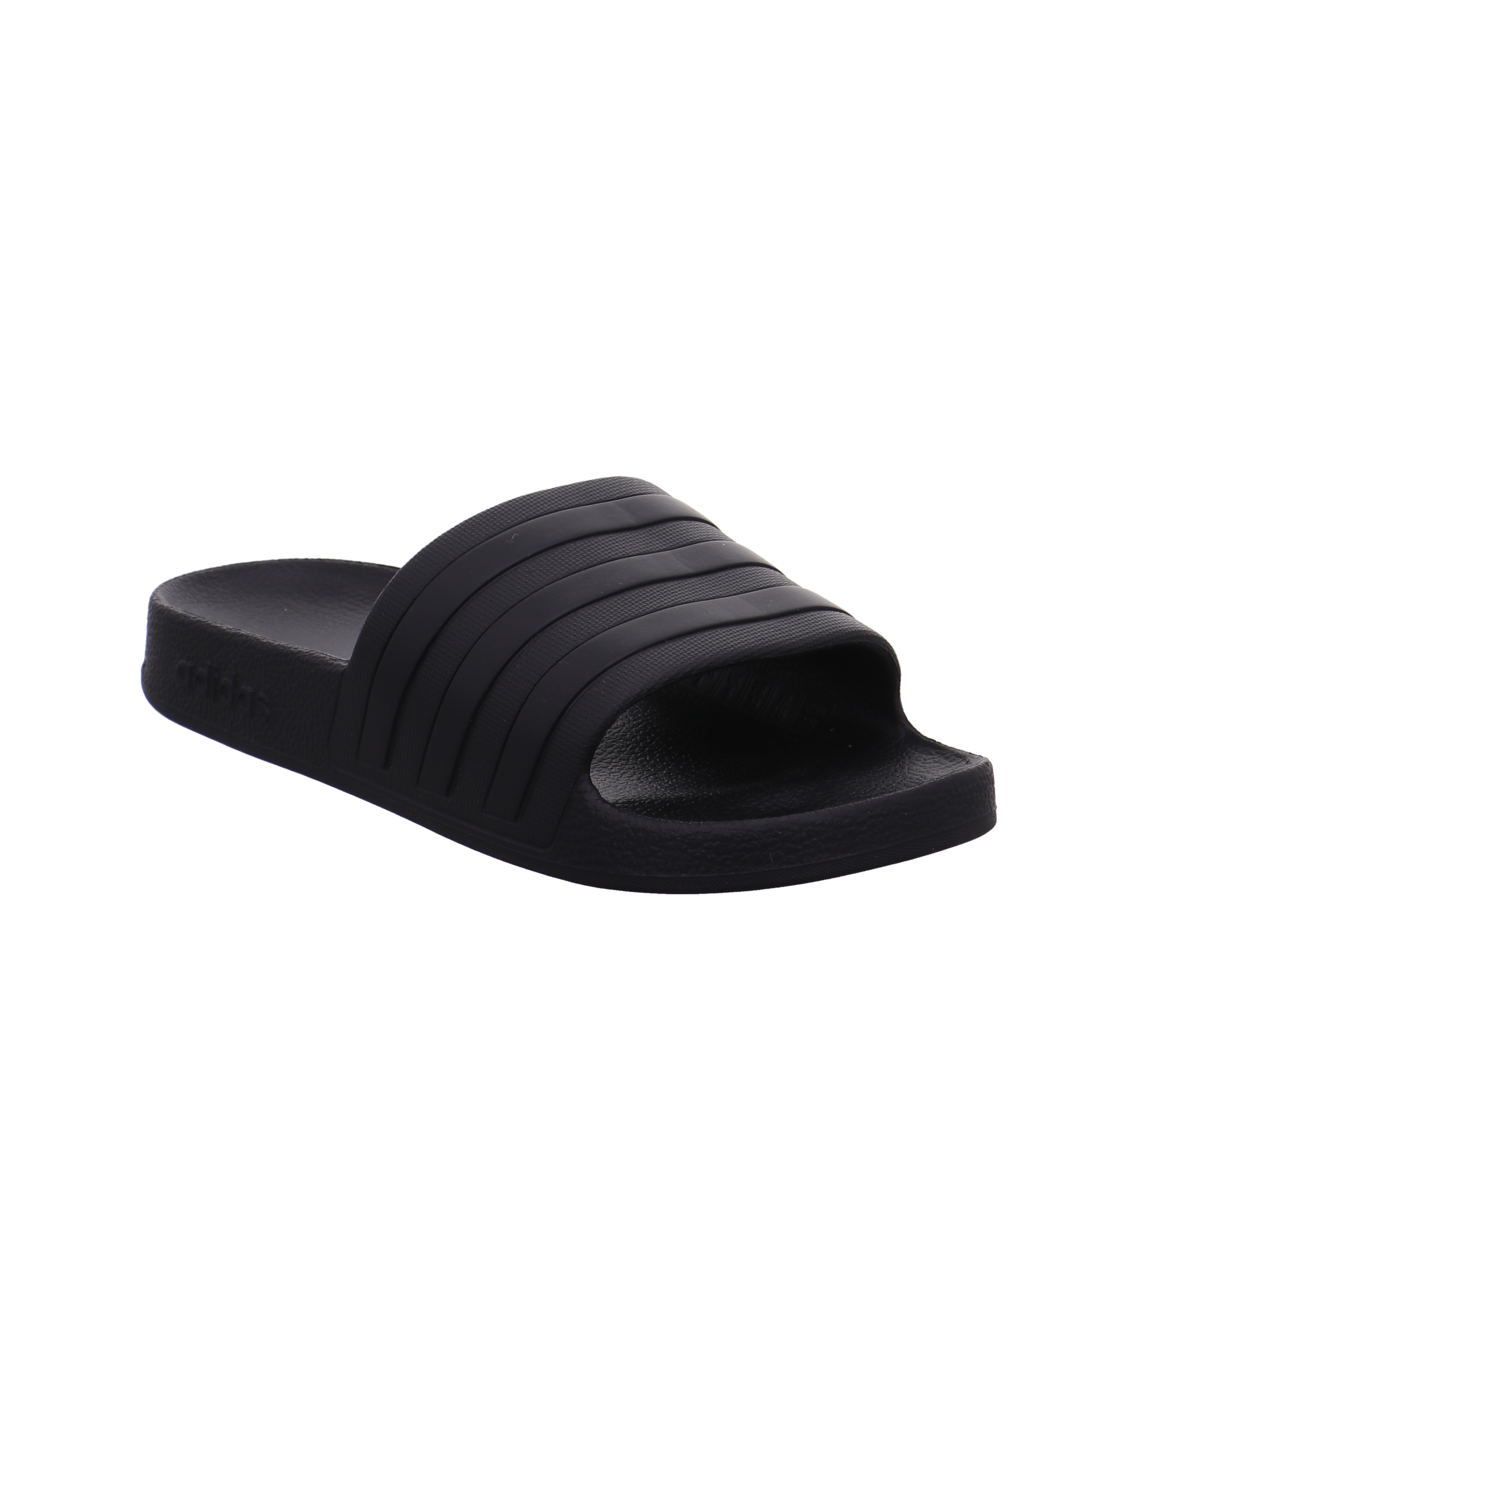 Adidas Schuhe  schwarz Bild7